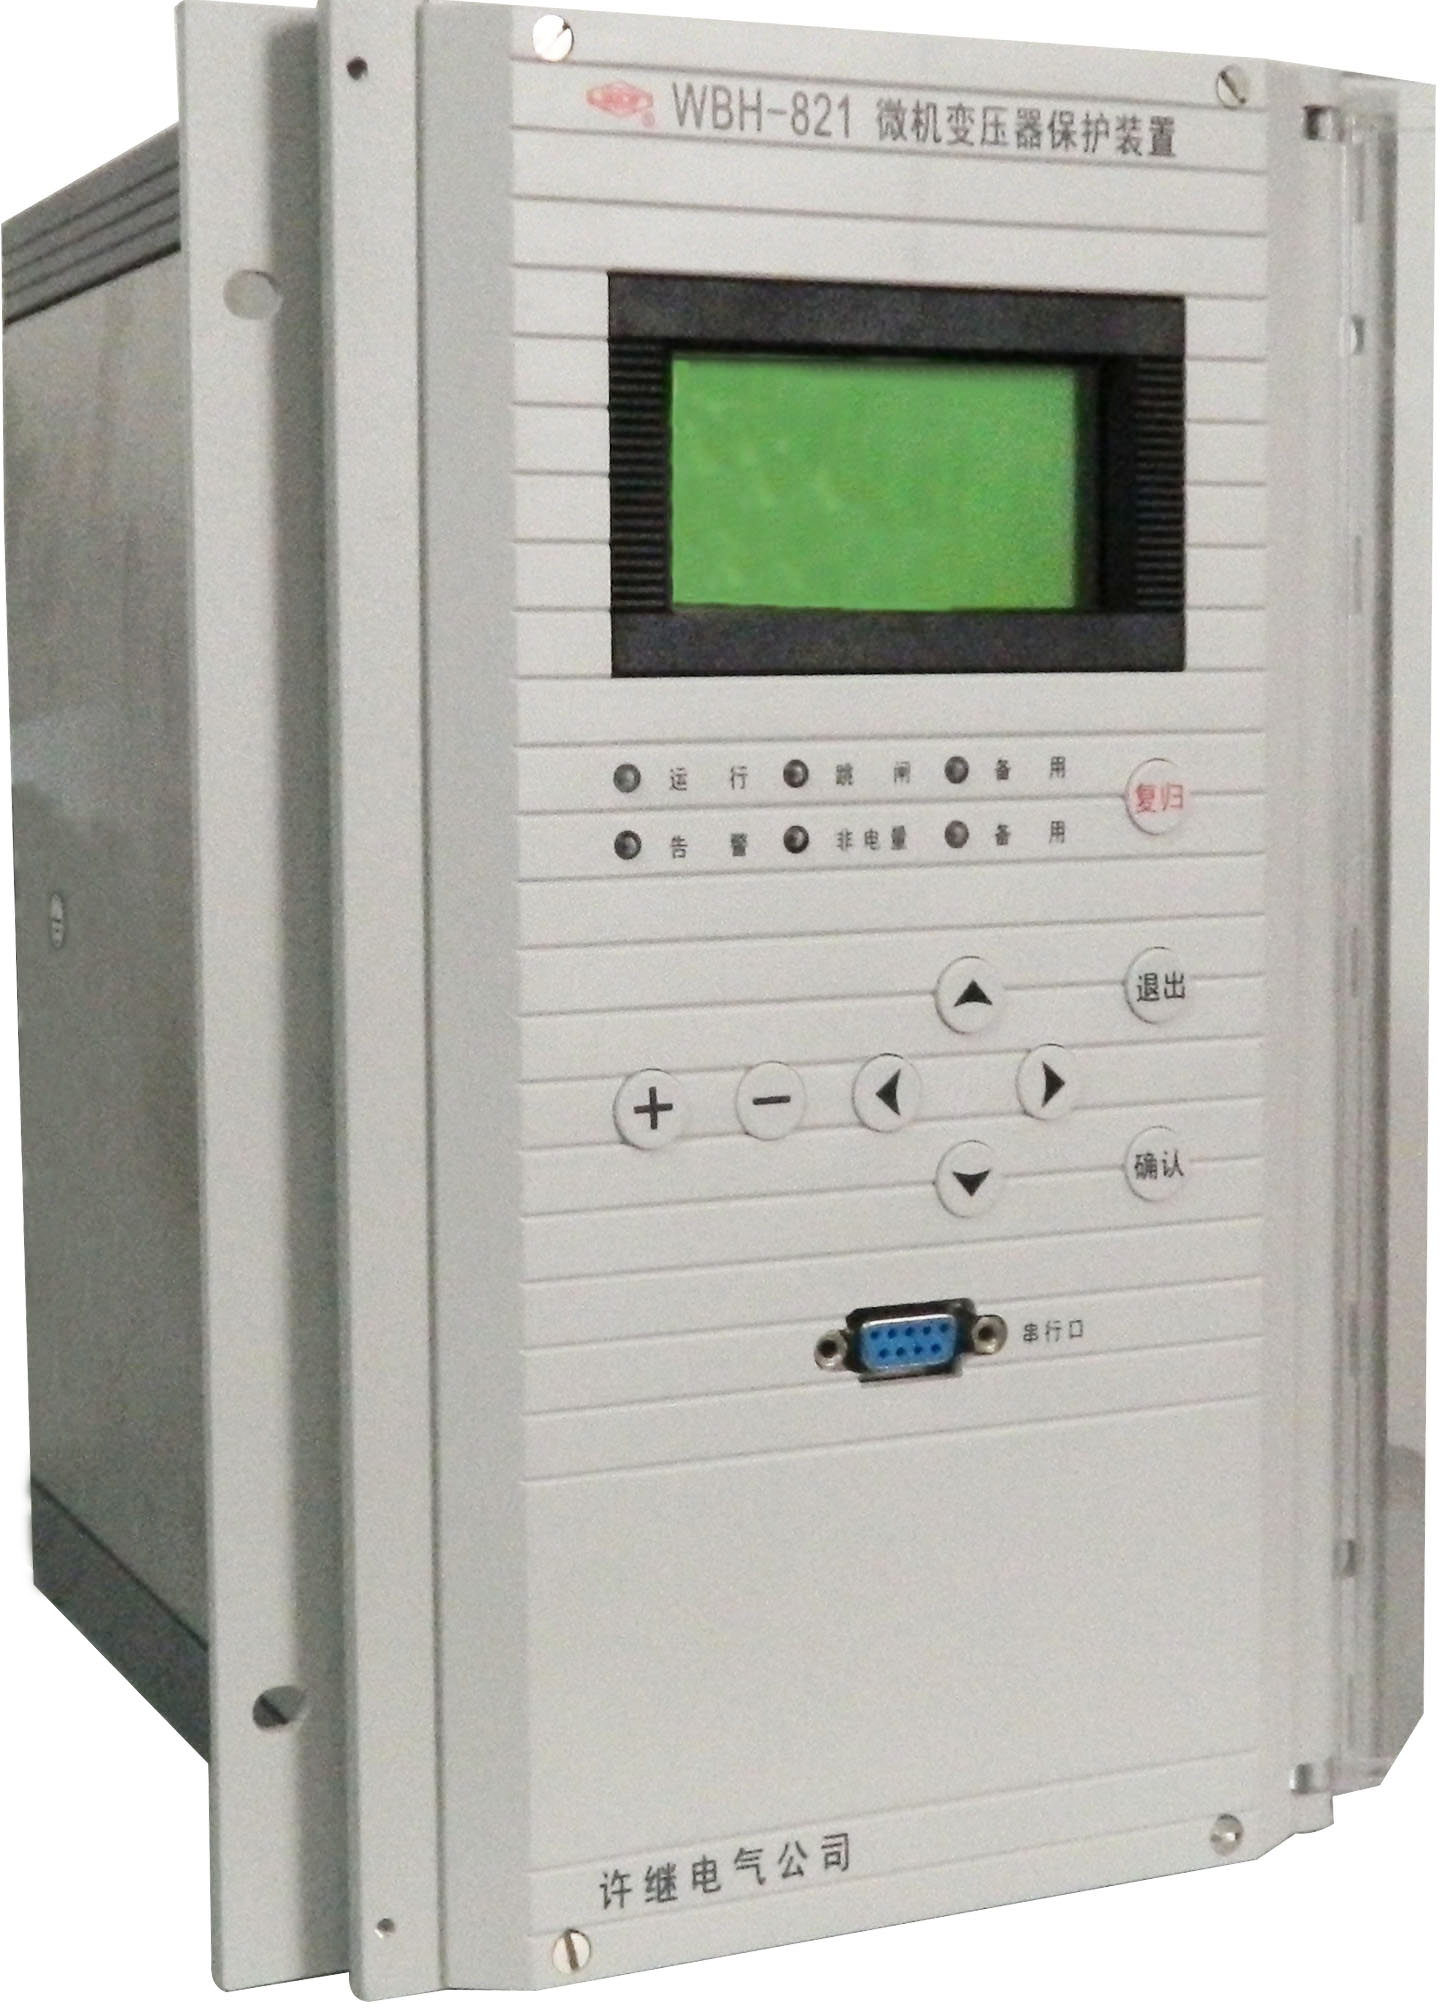 许继wxh-820系列微机保护装置